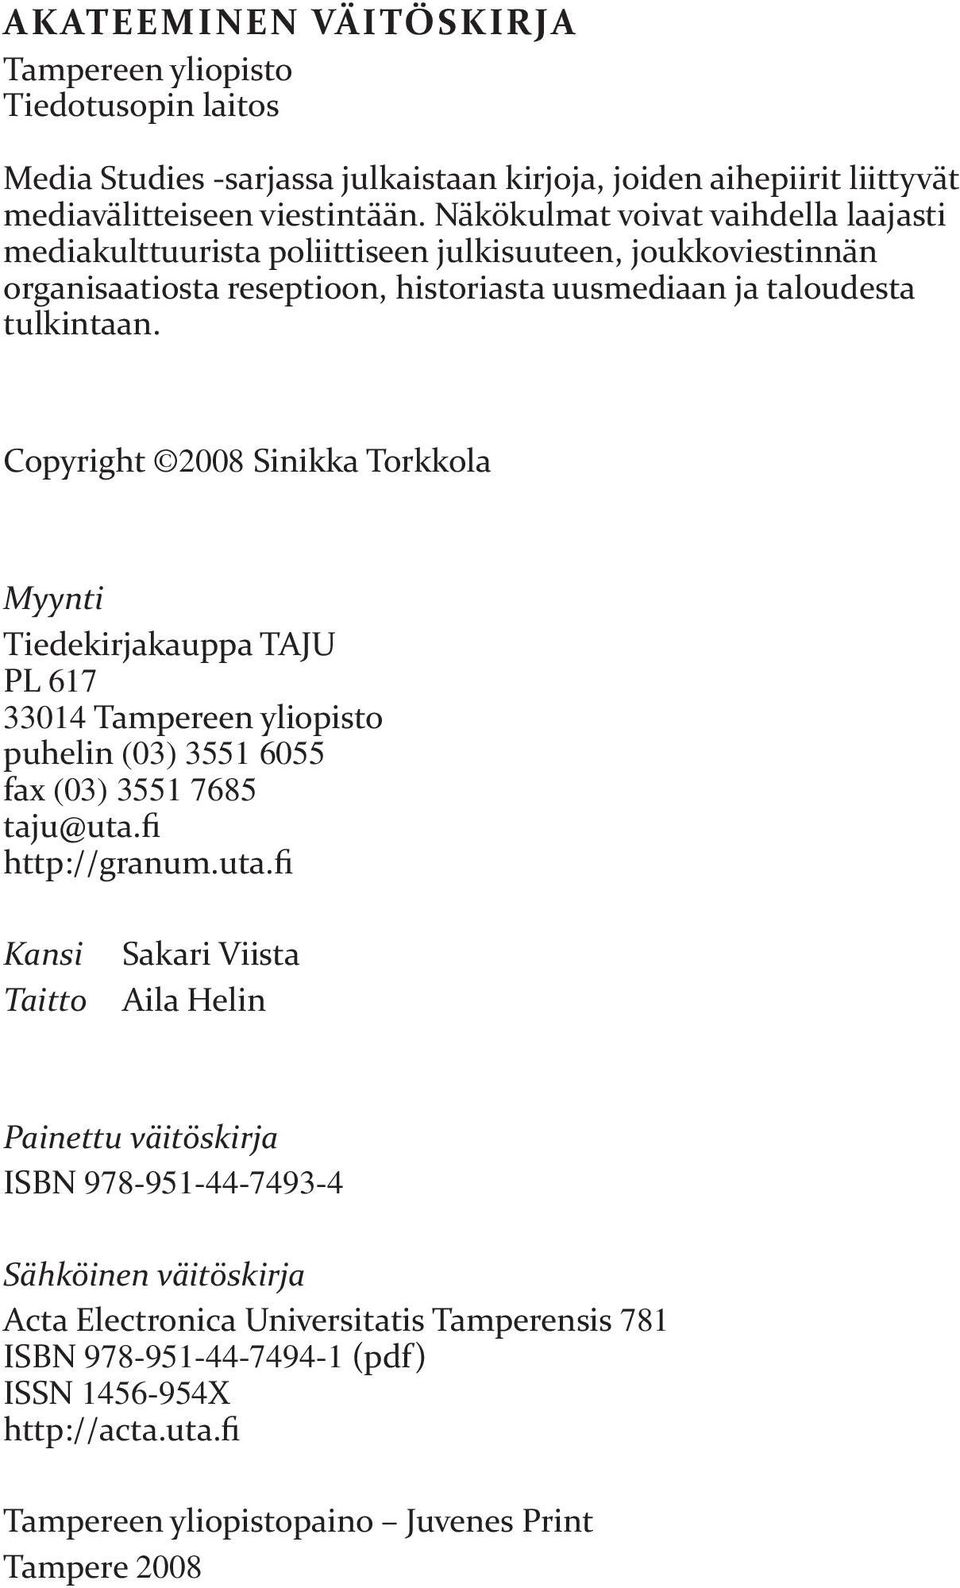 Copyright 2008 Sinikka Torkkola Myynti Tiedekirjakauppa TAJU PL 617 33014 Tampereen yliopisto puhelin (03) 3551 6055 fax (03) 3551 7685 taju@uta.